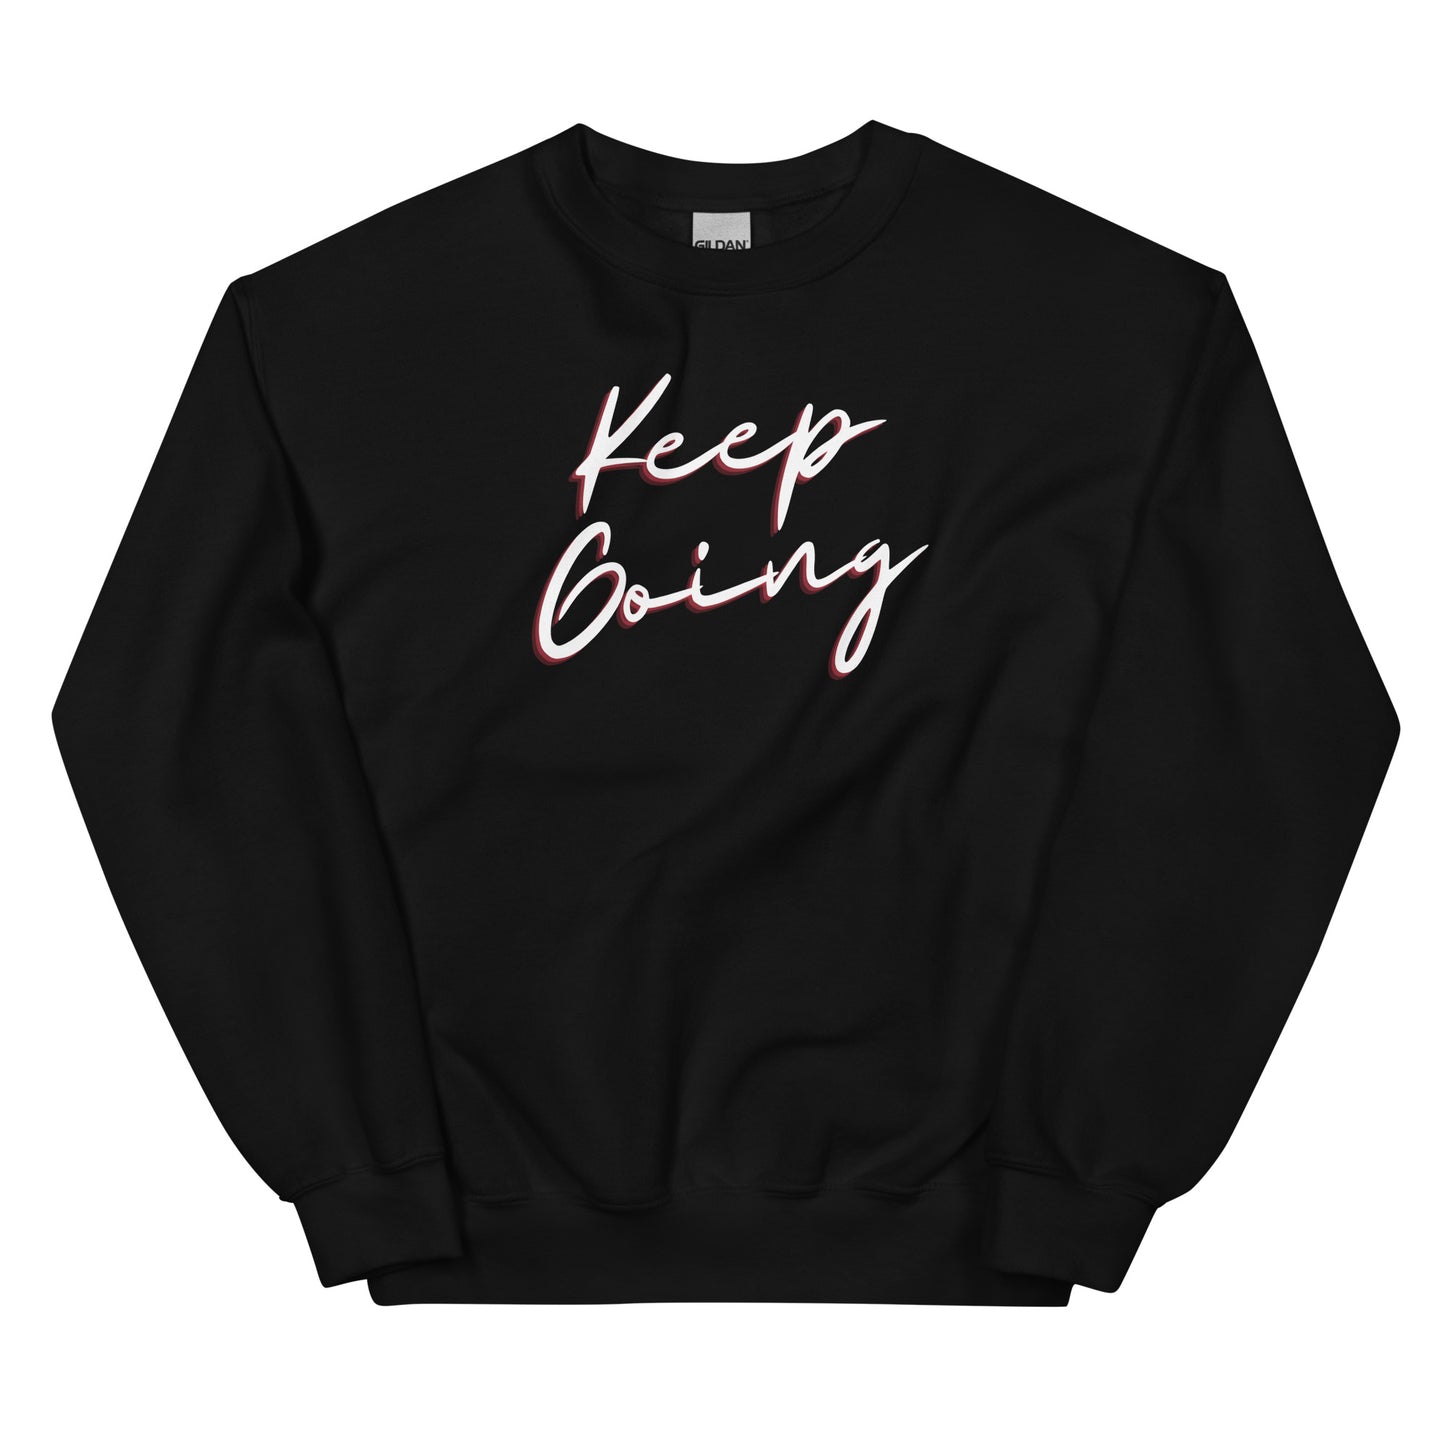 Keep Going. Inspirational Sweatshirt